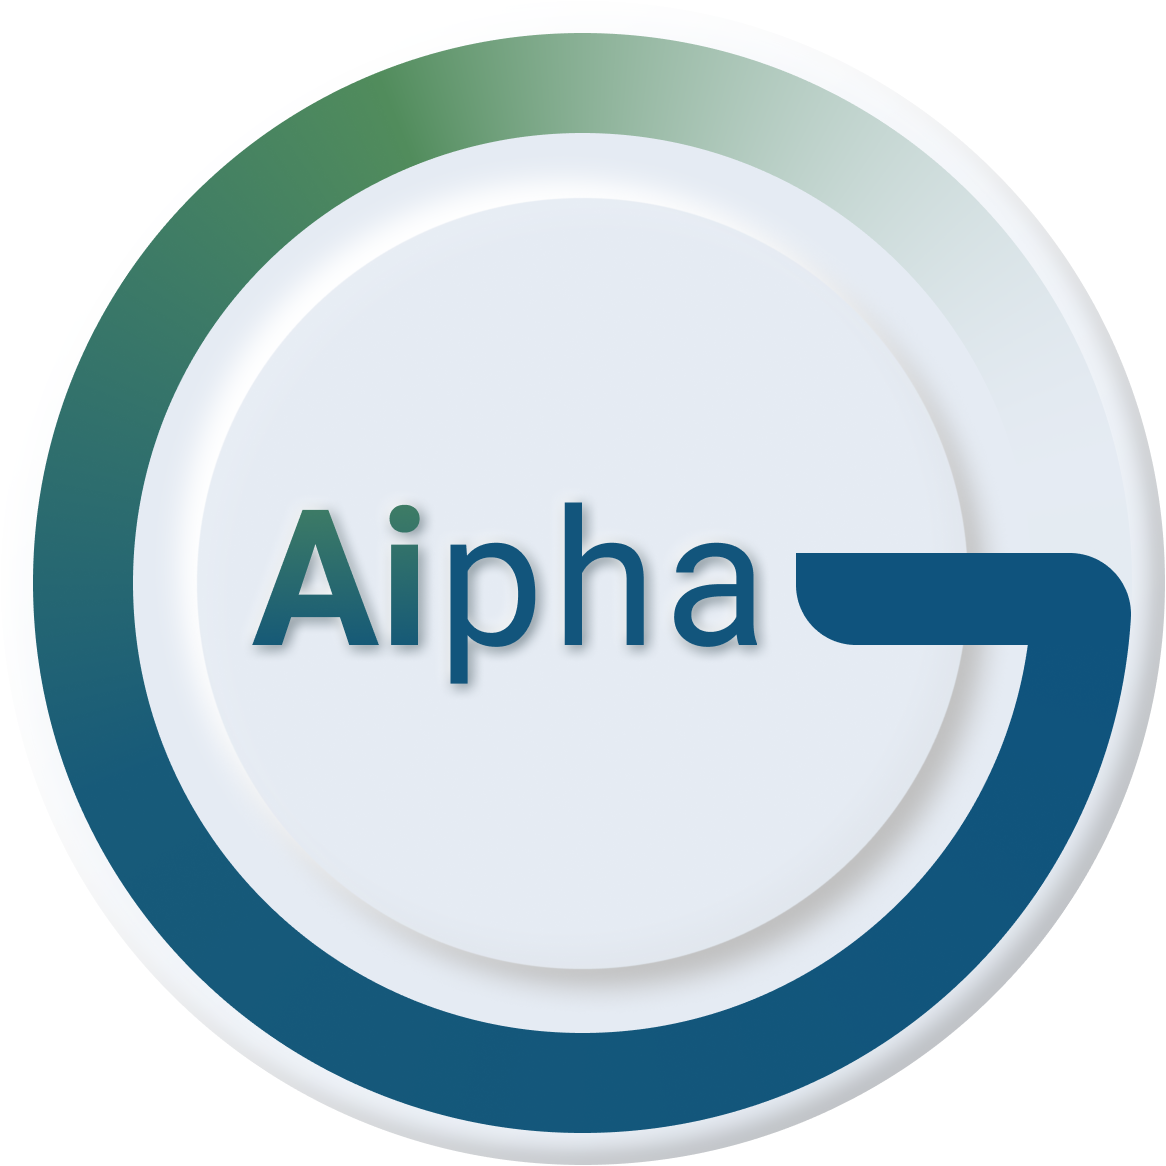 Aipha-G la startup de Presencia Aumentada que permite ¨teletransportar¨ personas como si estuvieran en otro lugar